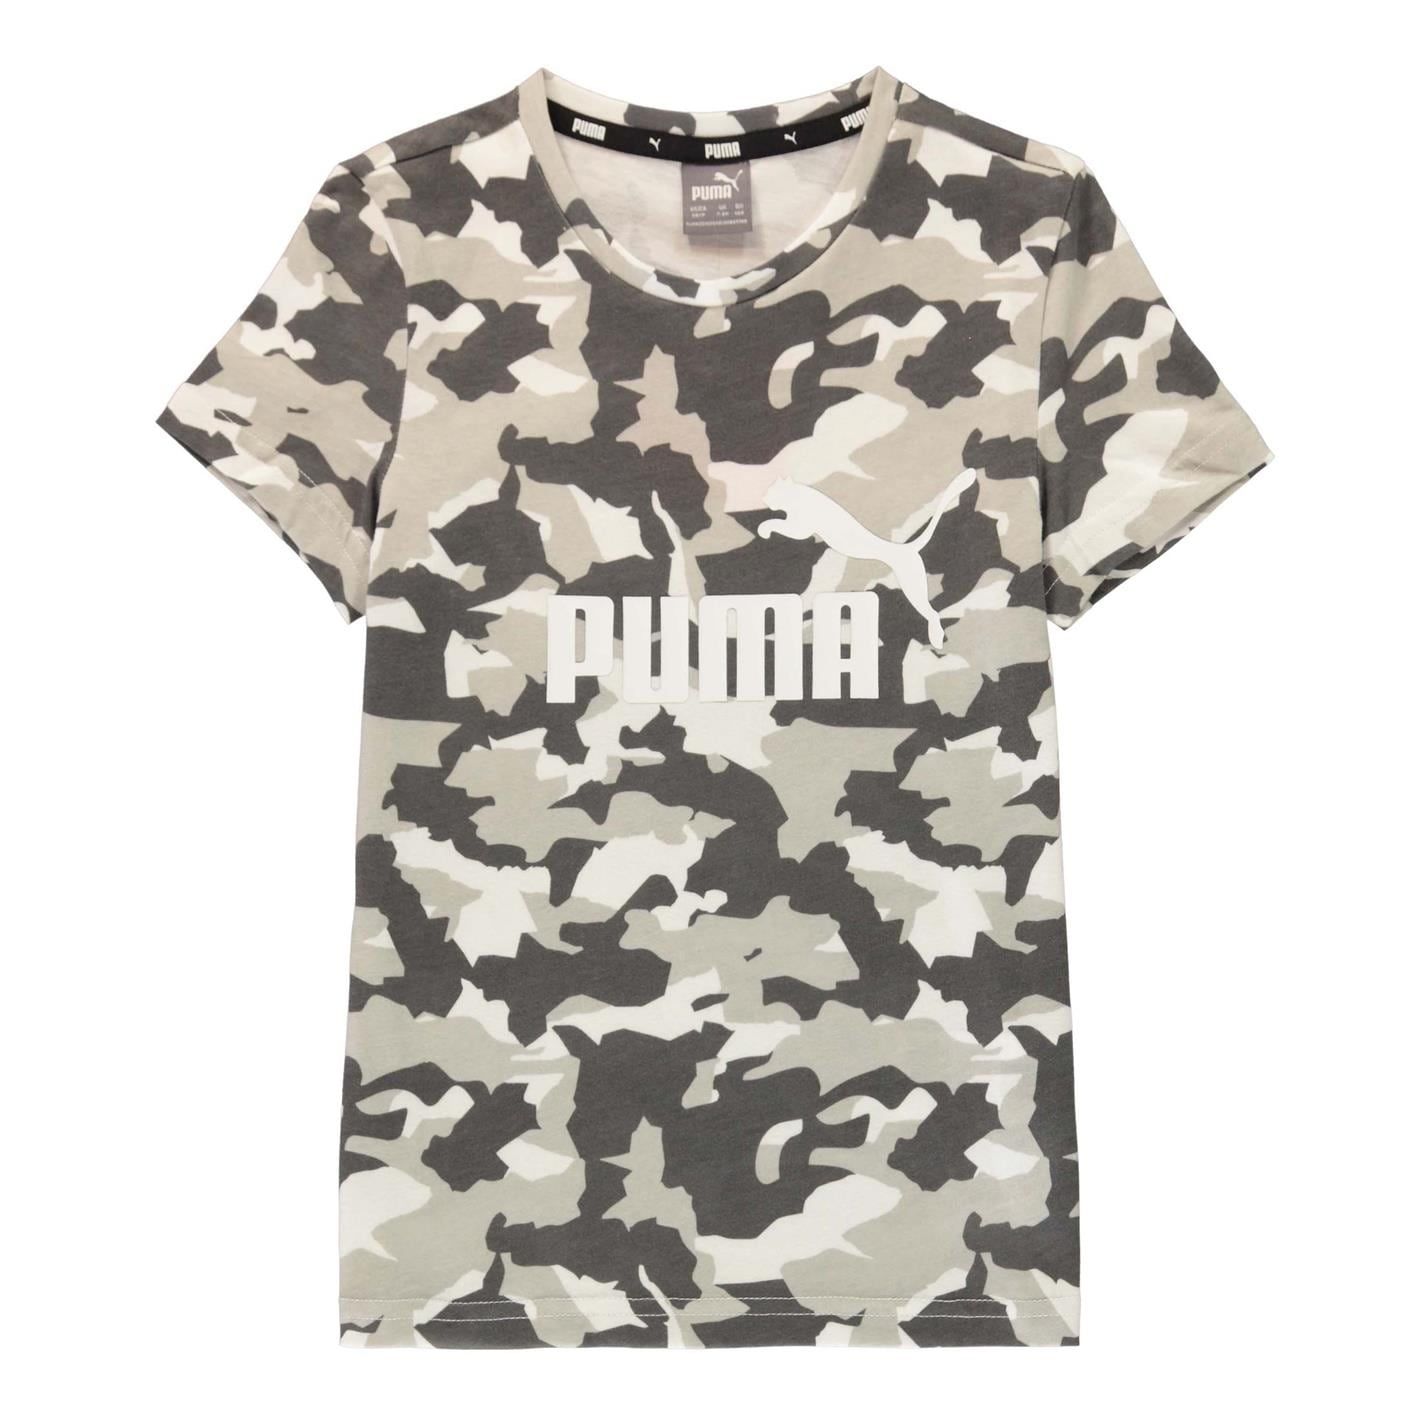 dětské tričko PUMA - URBAN/CAMO - 152 11-12 let